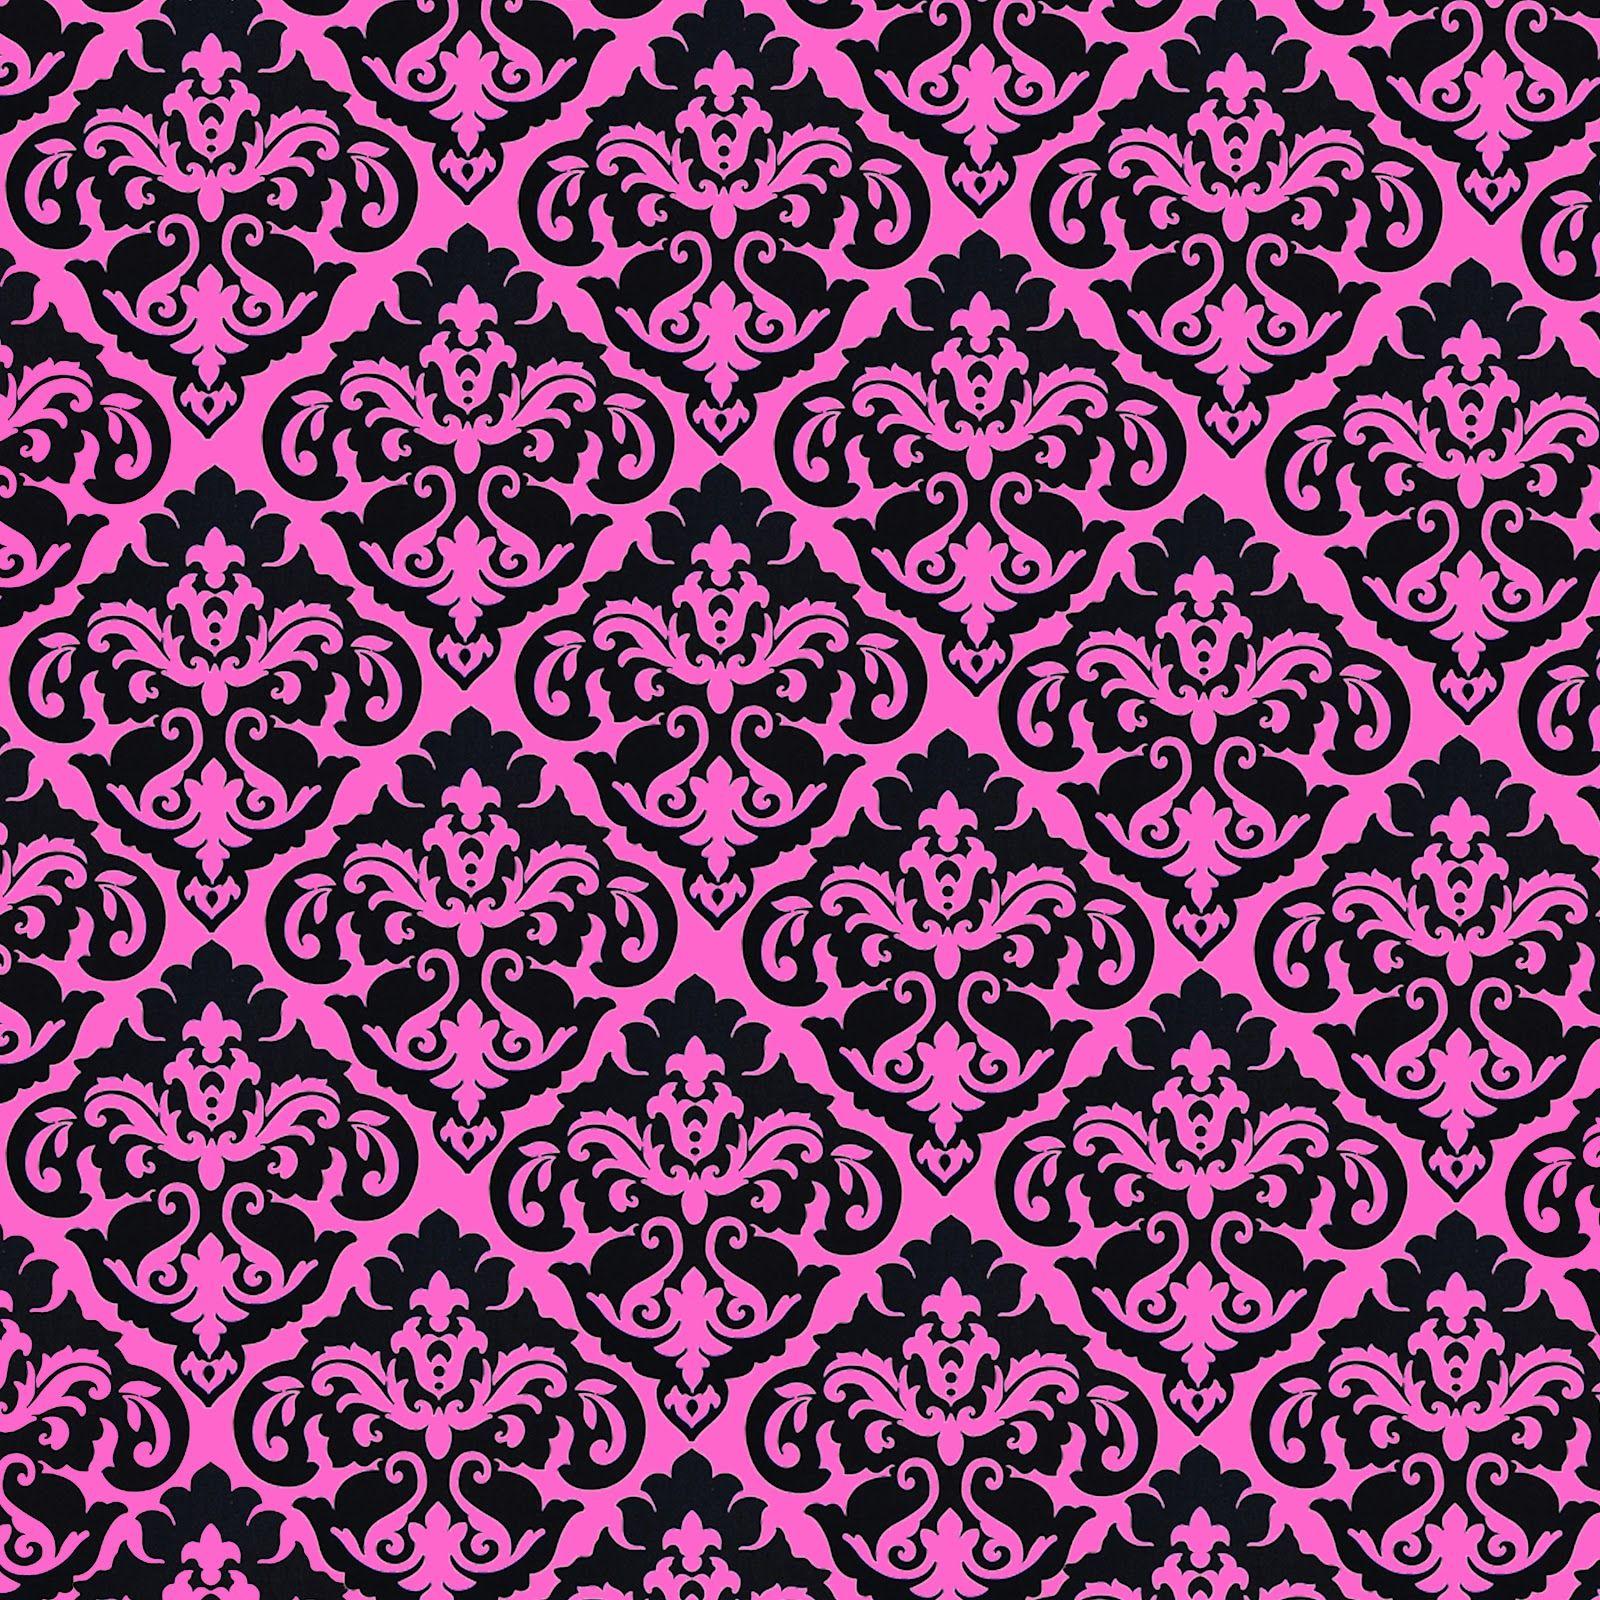 black and pink damask wallpaper pink damask flower Wallpaper.Com